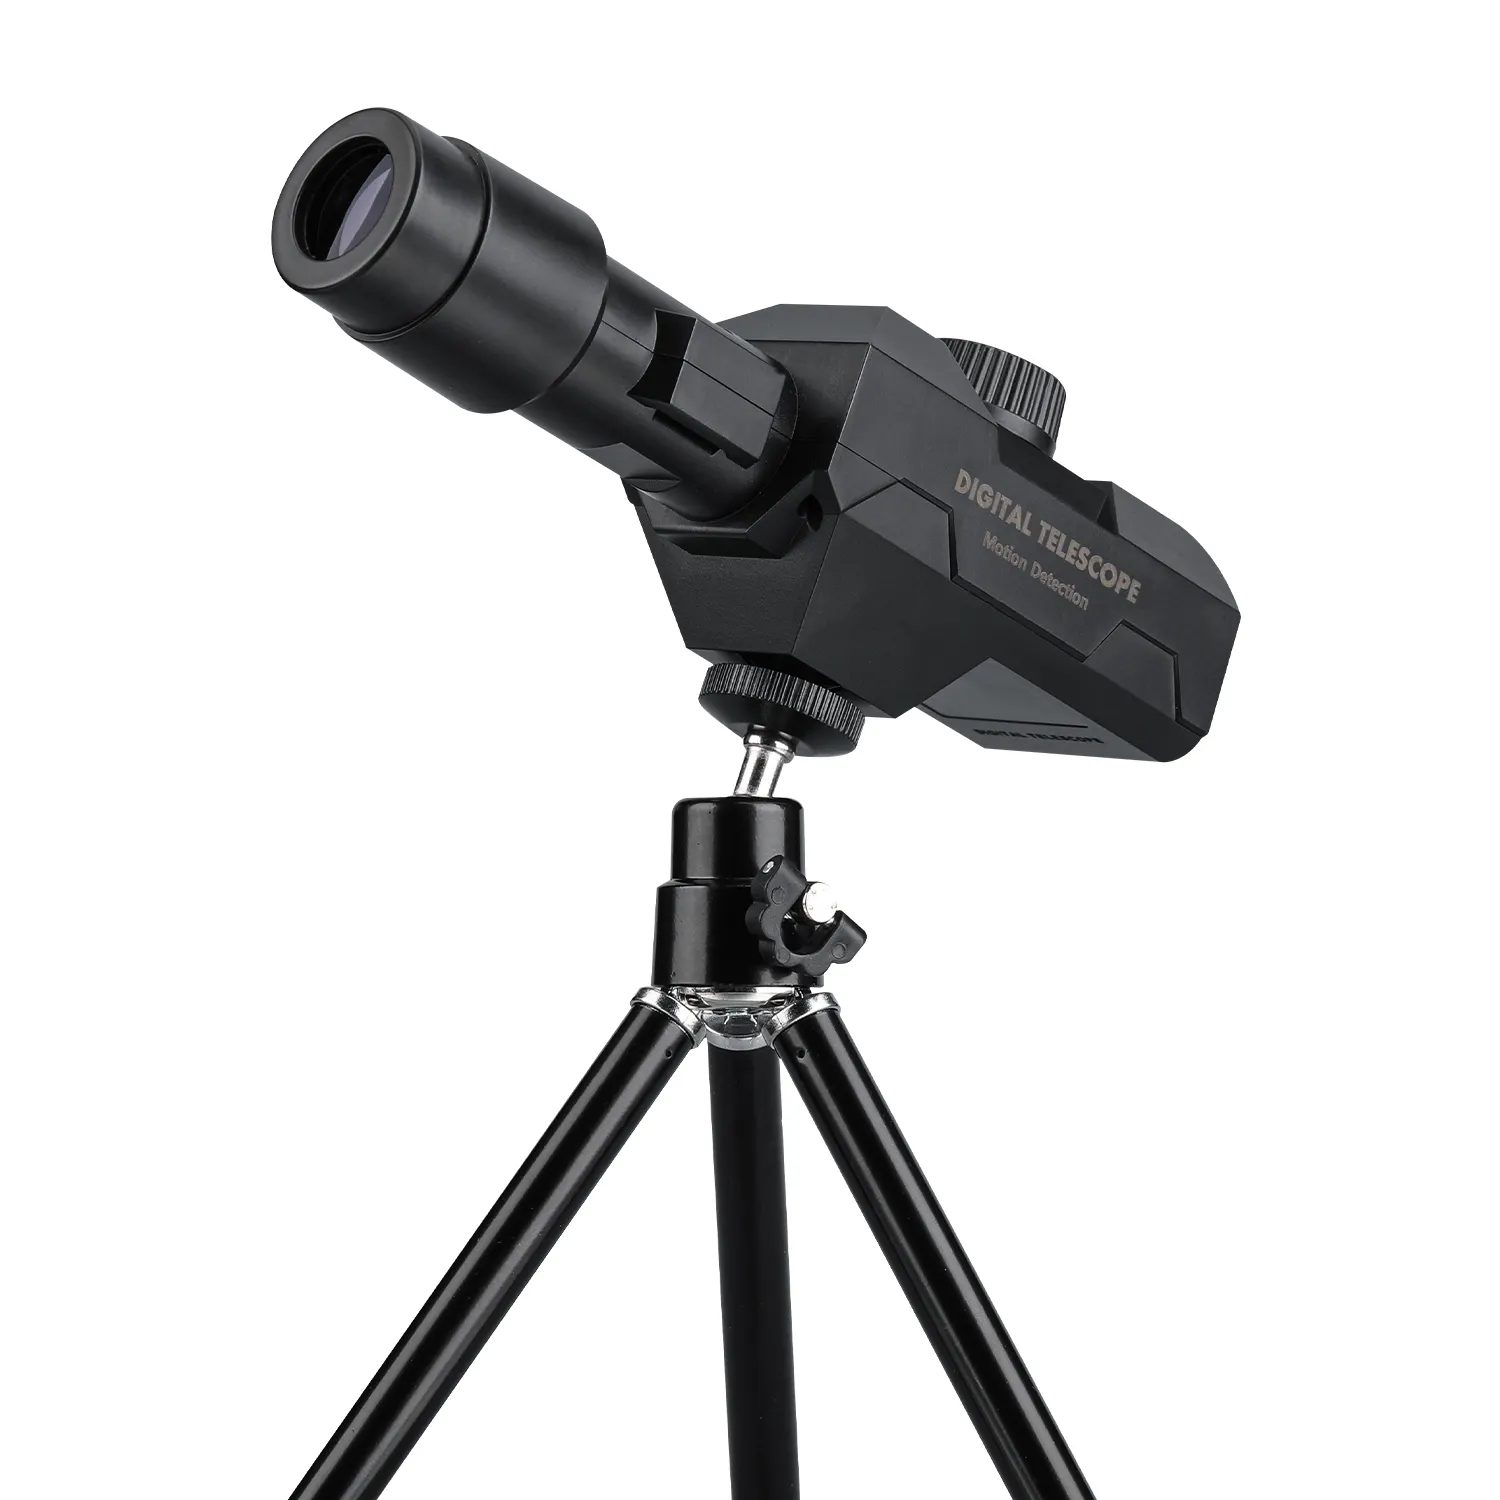 Winait Full HD 1080P telecamera Wifi con telescopio Magnation 70X a fuoco lungo